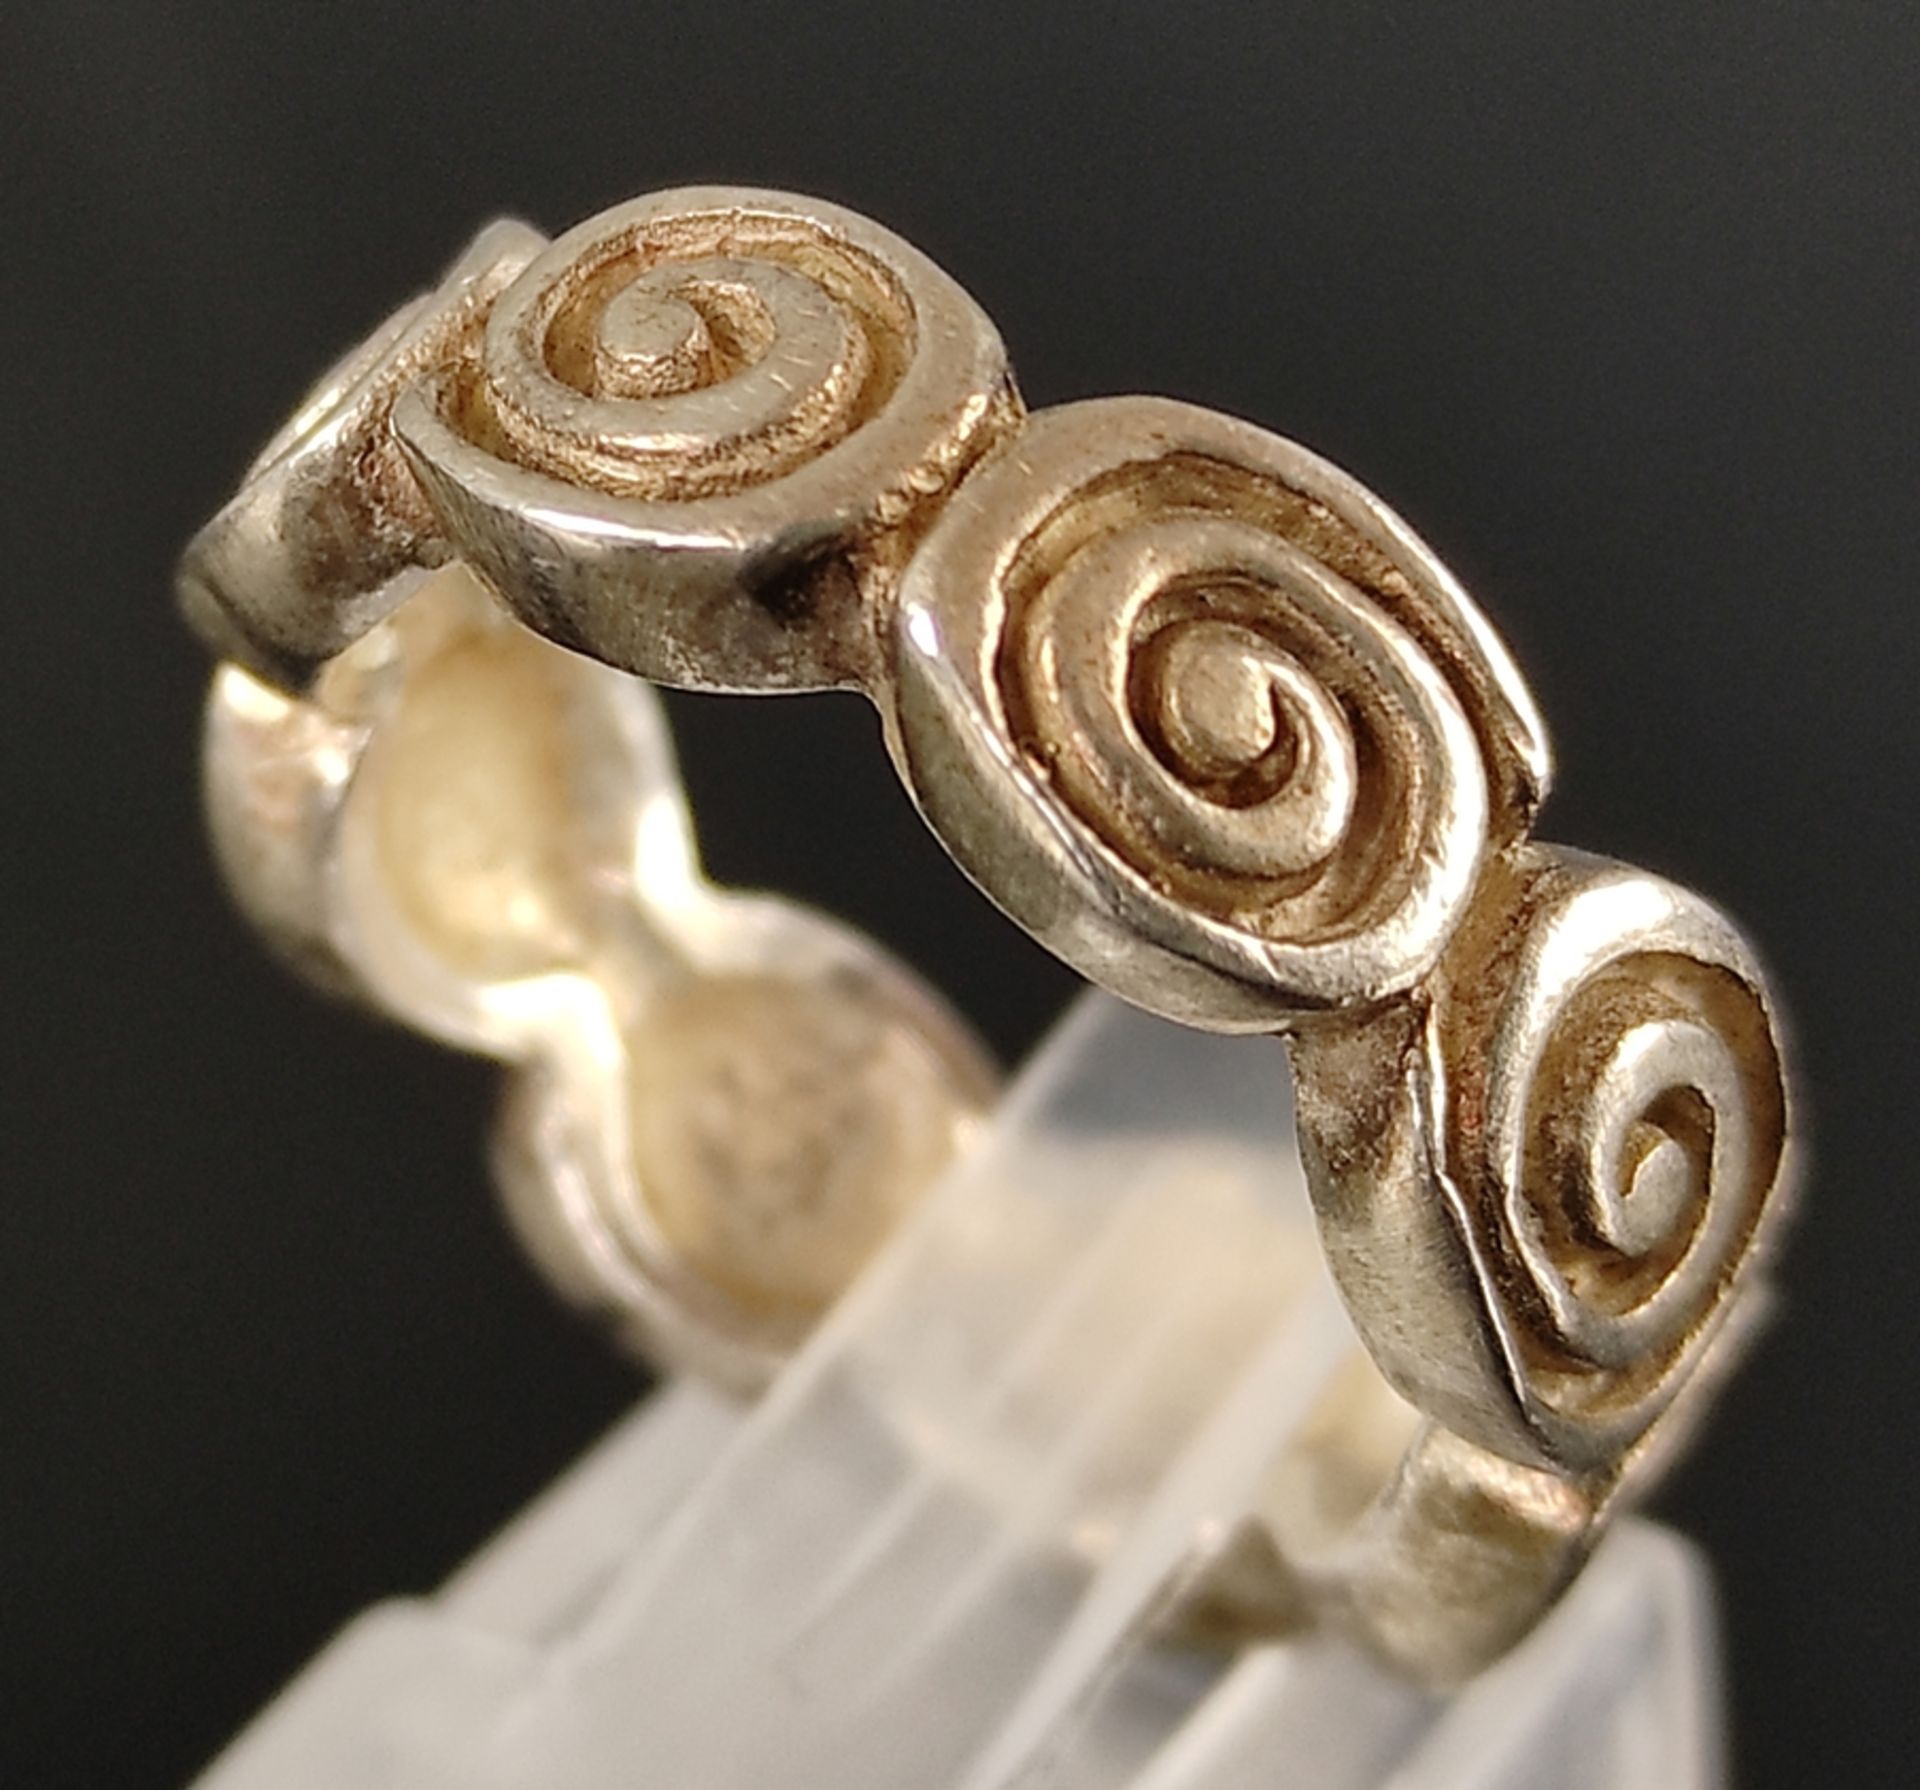 Moderner Ring mit Spiral-Elementen, Silber 925, 7,1g, Größe 54 - Bild 3 aus 3